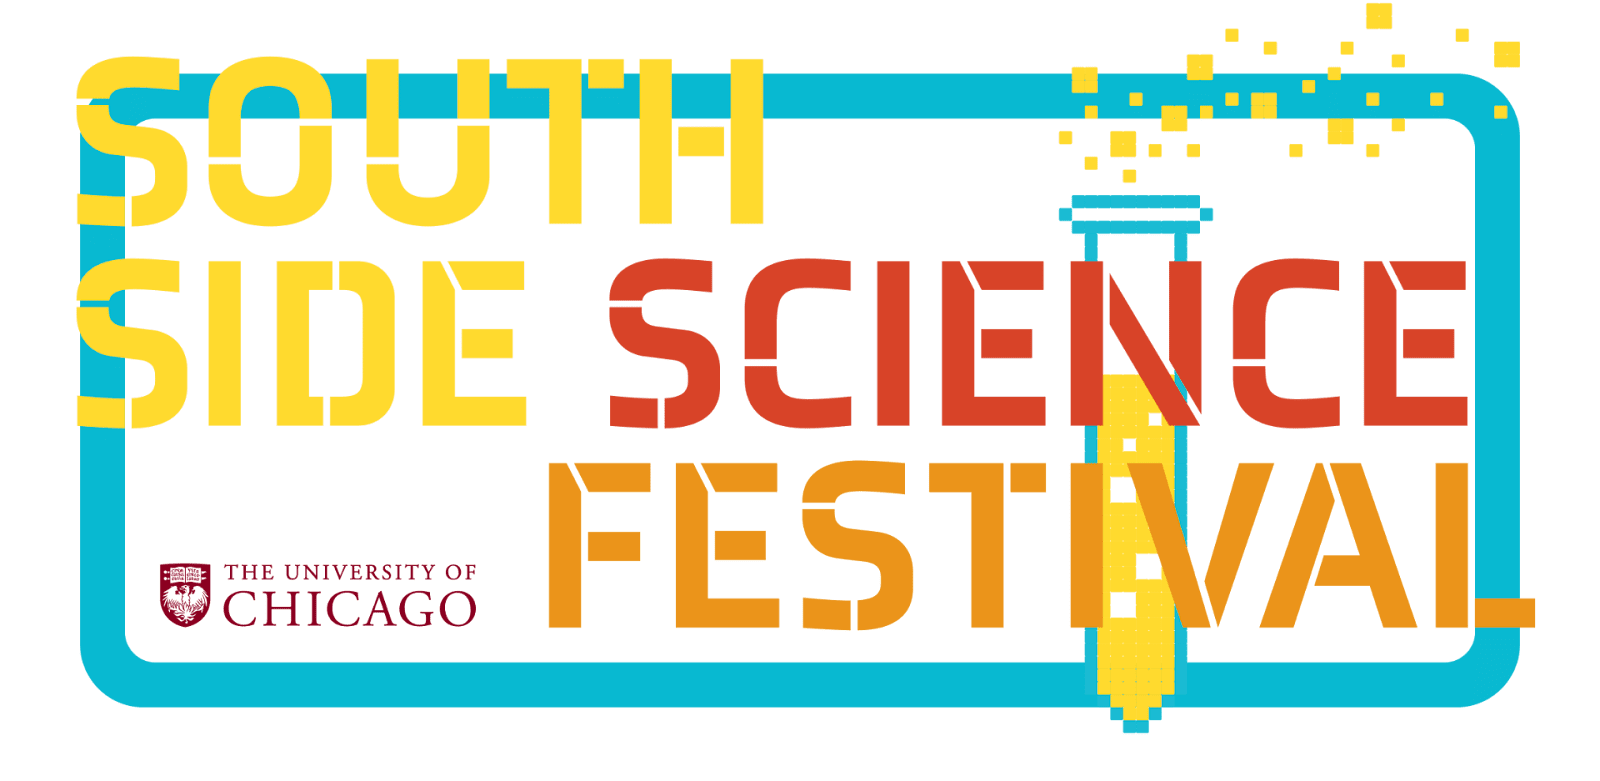 Ser humano: una lección que aprendí del Southside Science Festival